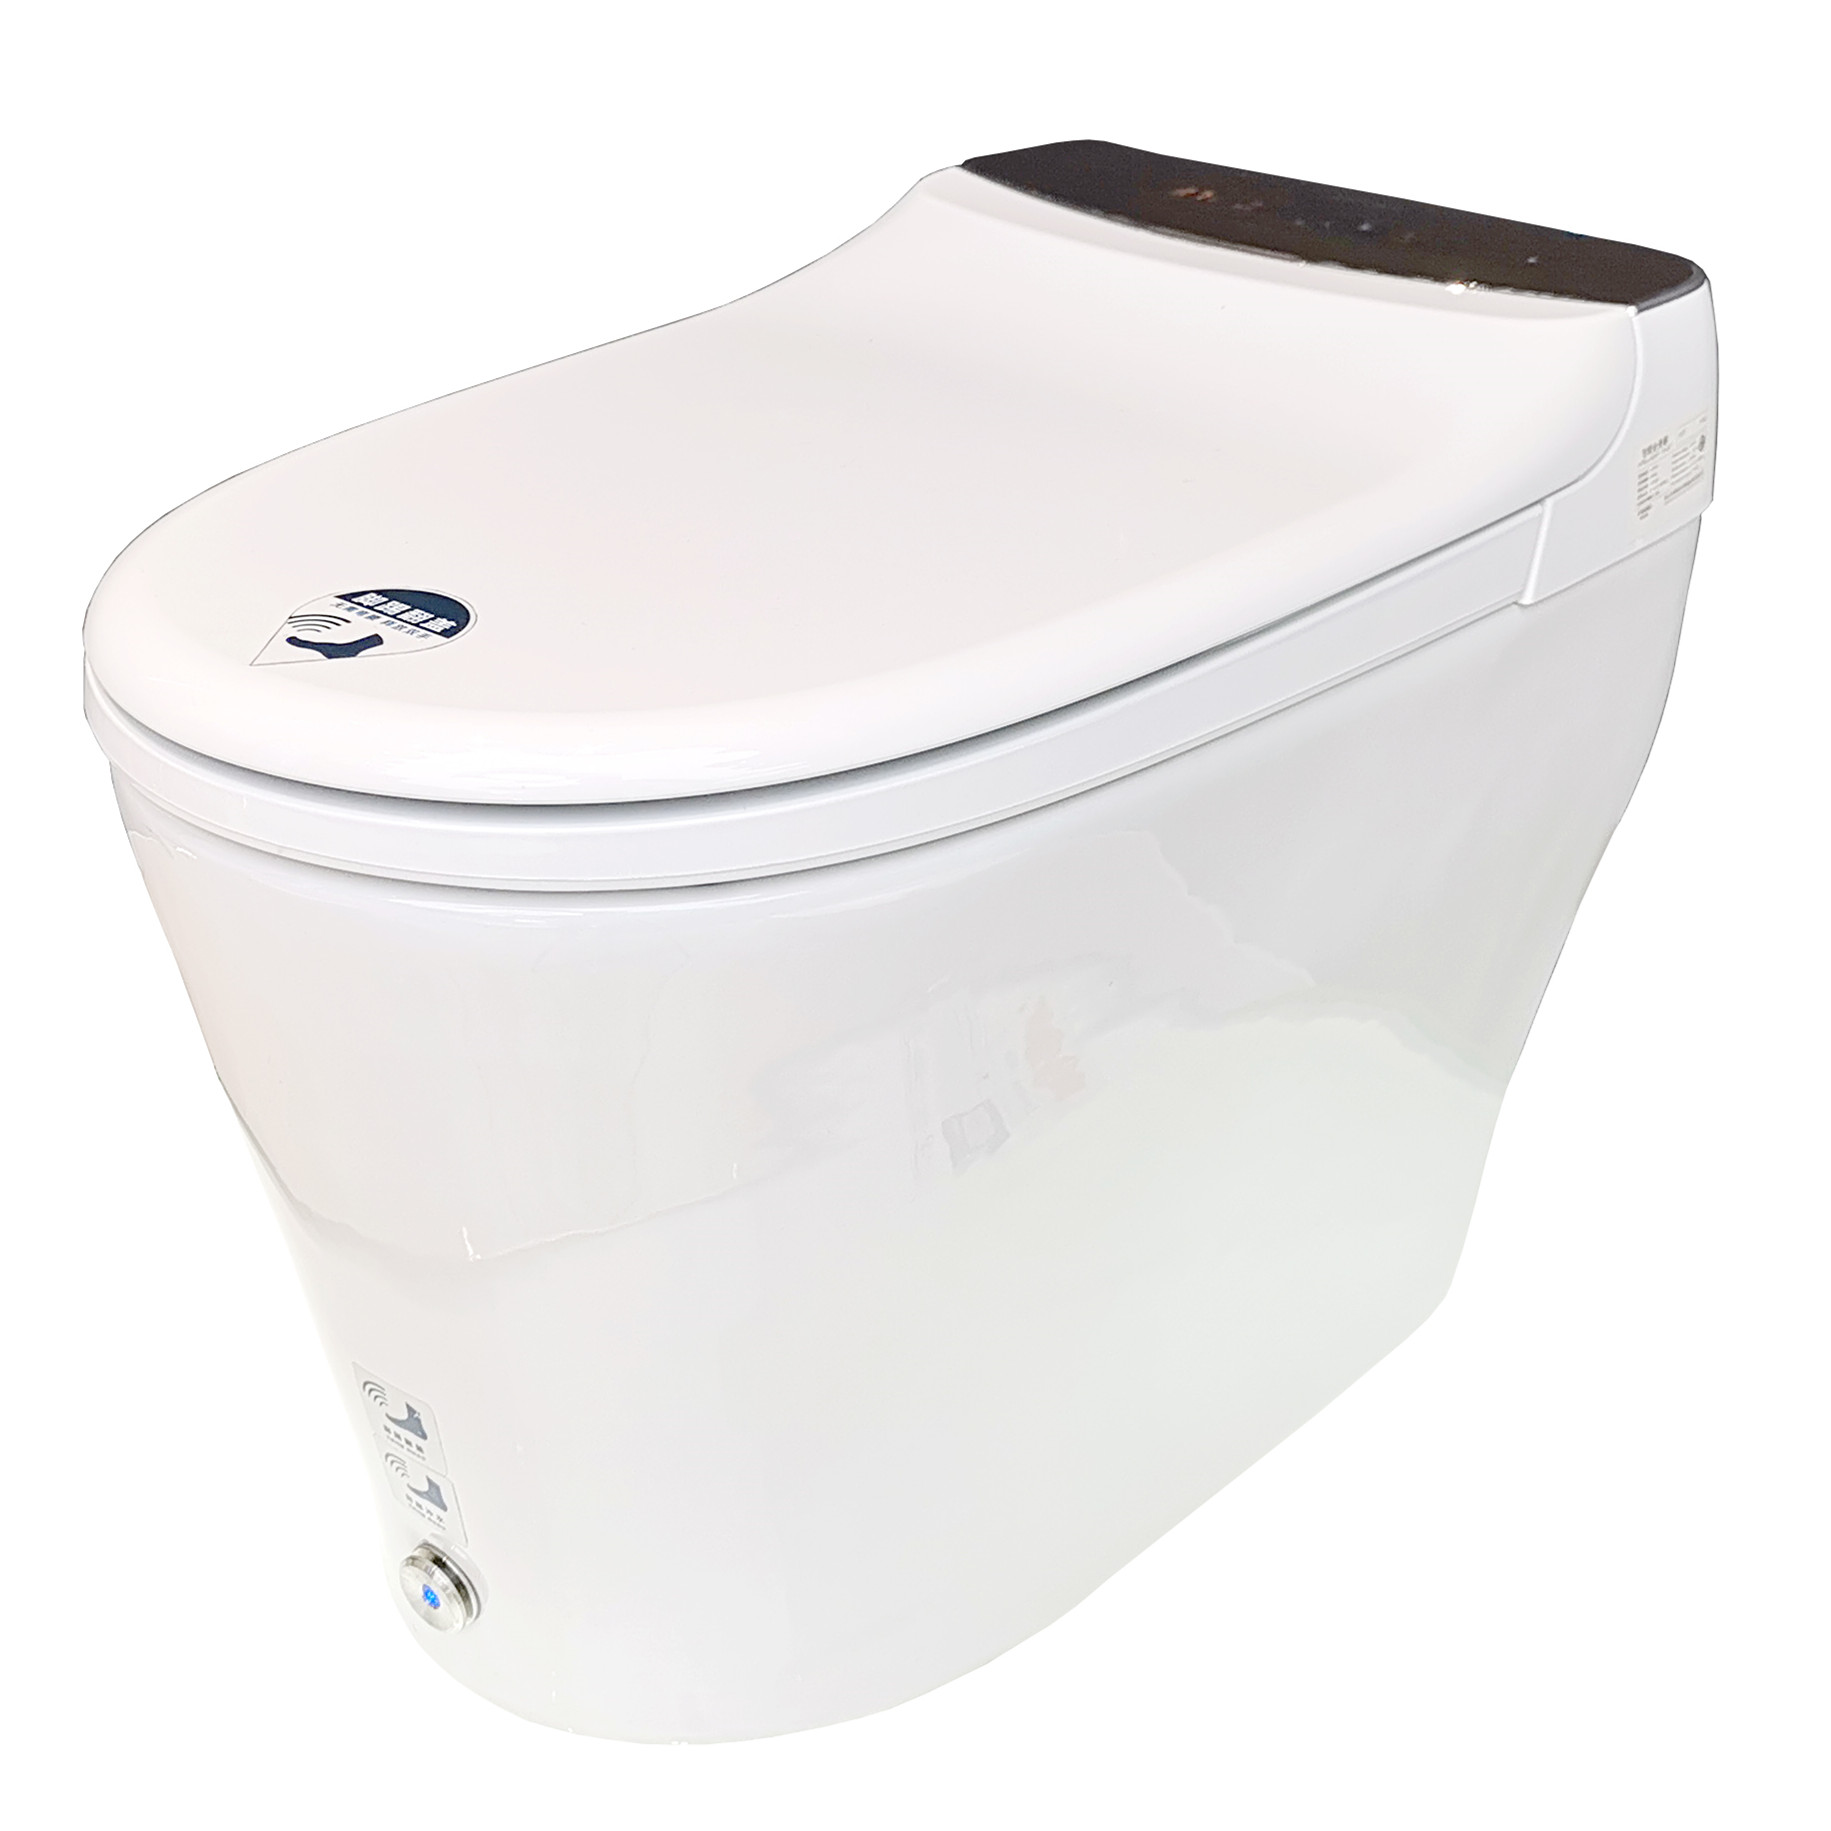 ANNWA Smart Toilet i11T